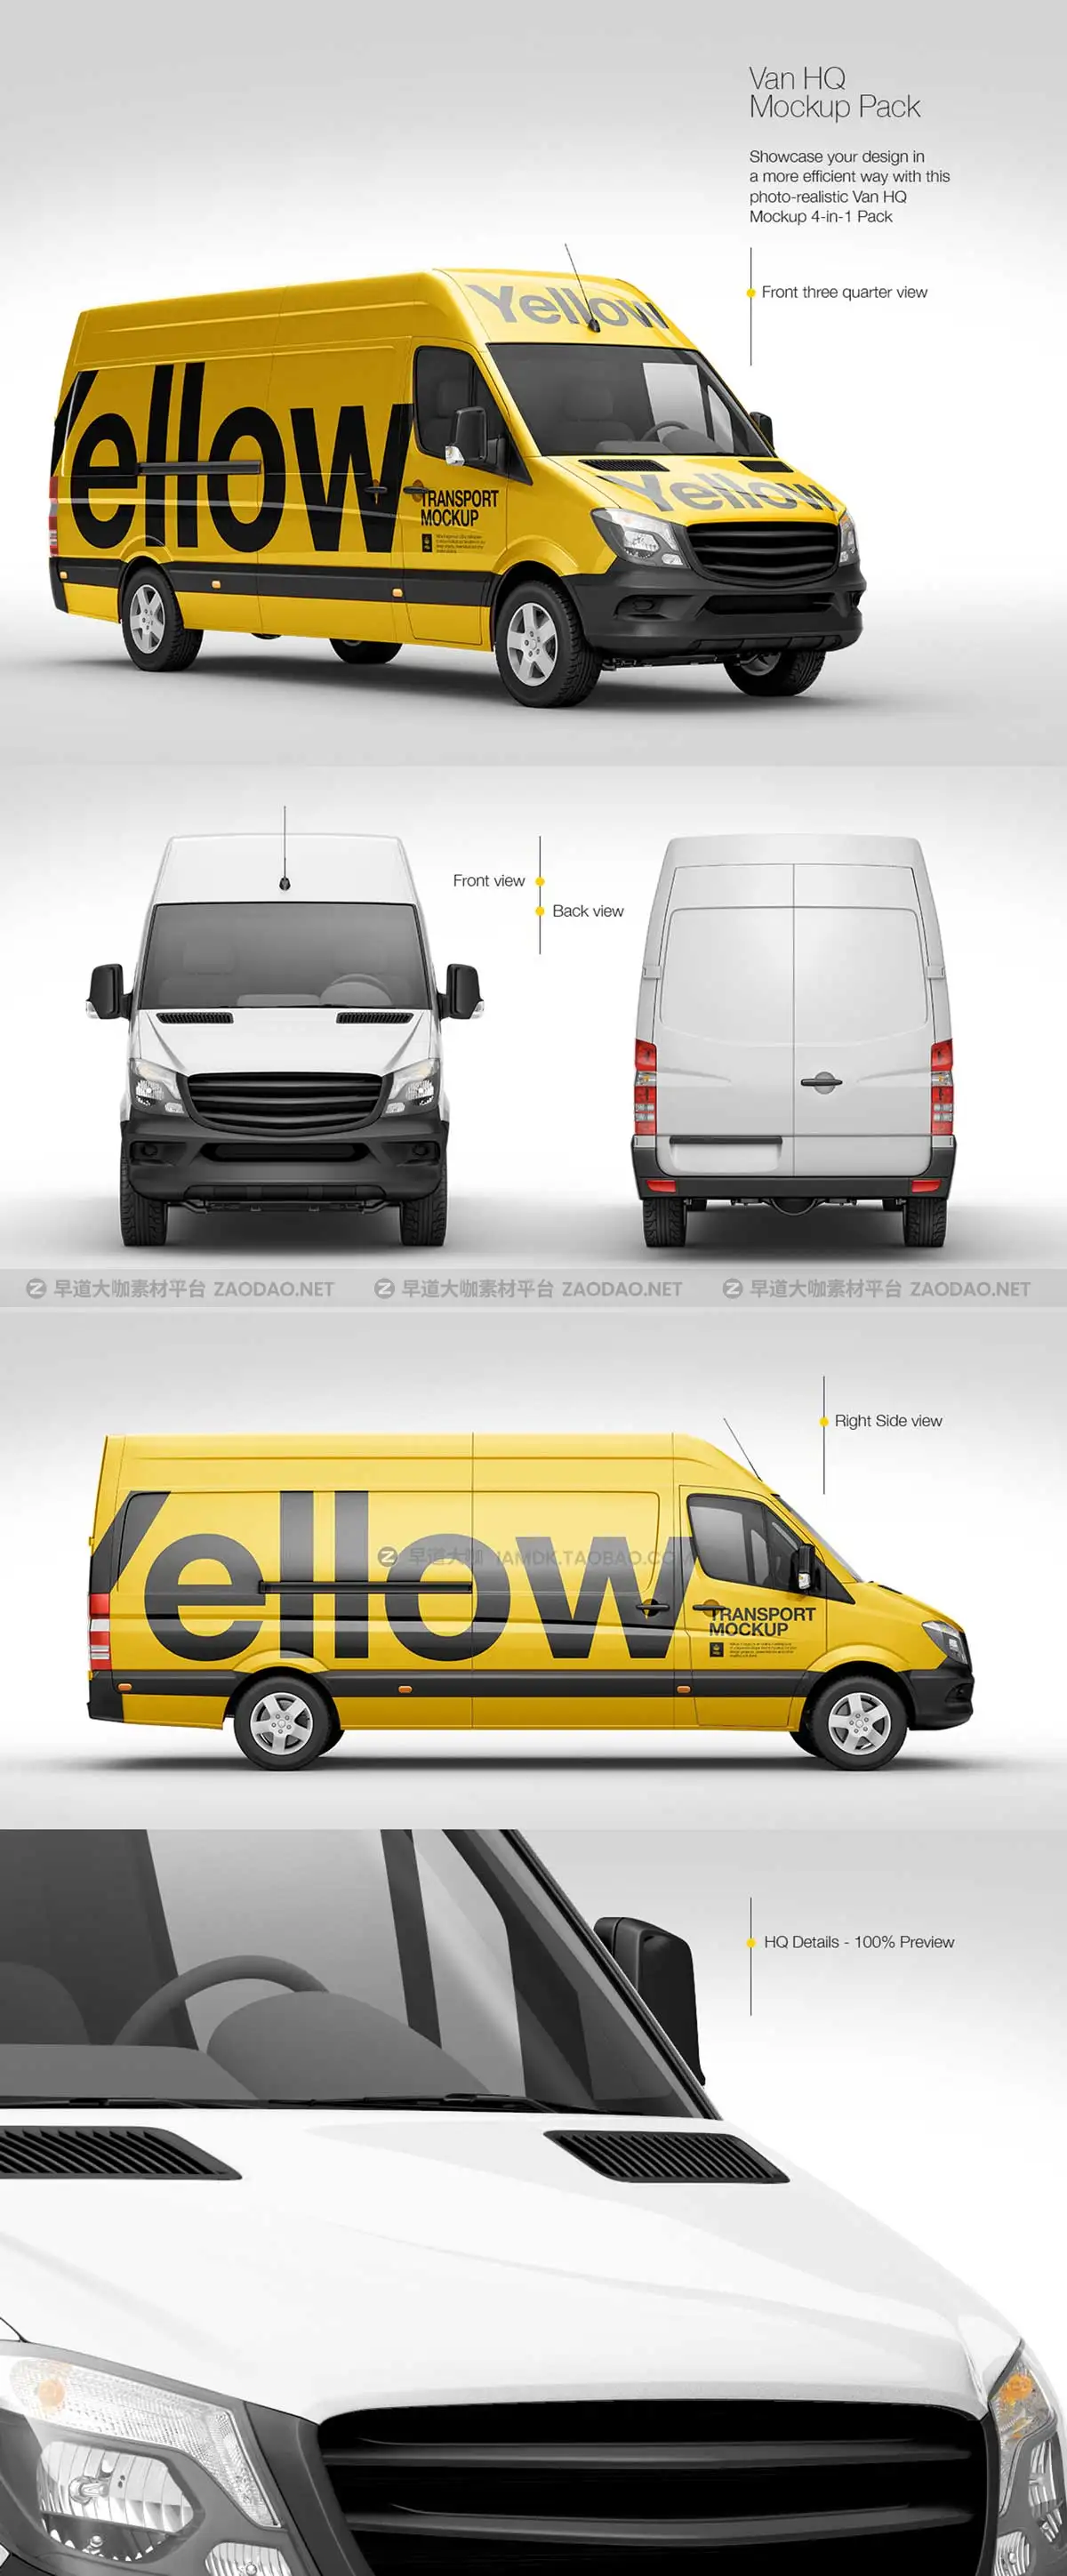 极简封闭式面包车货车车身图案设计PS展示贴图样机模板素材 YellowImages – Van HQ Mockup Pack插图